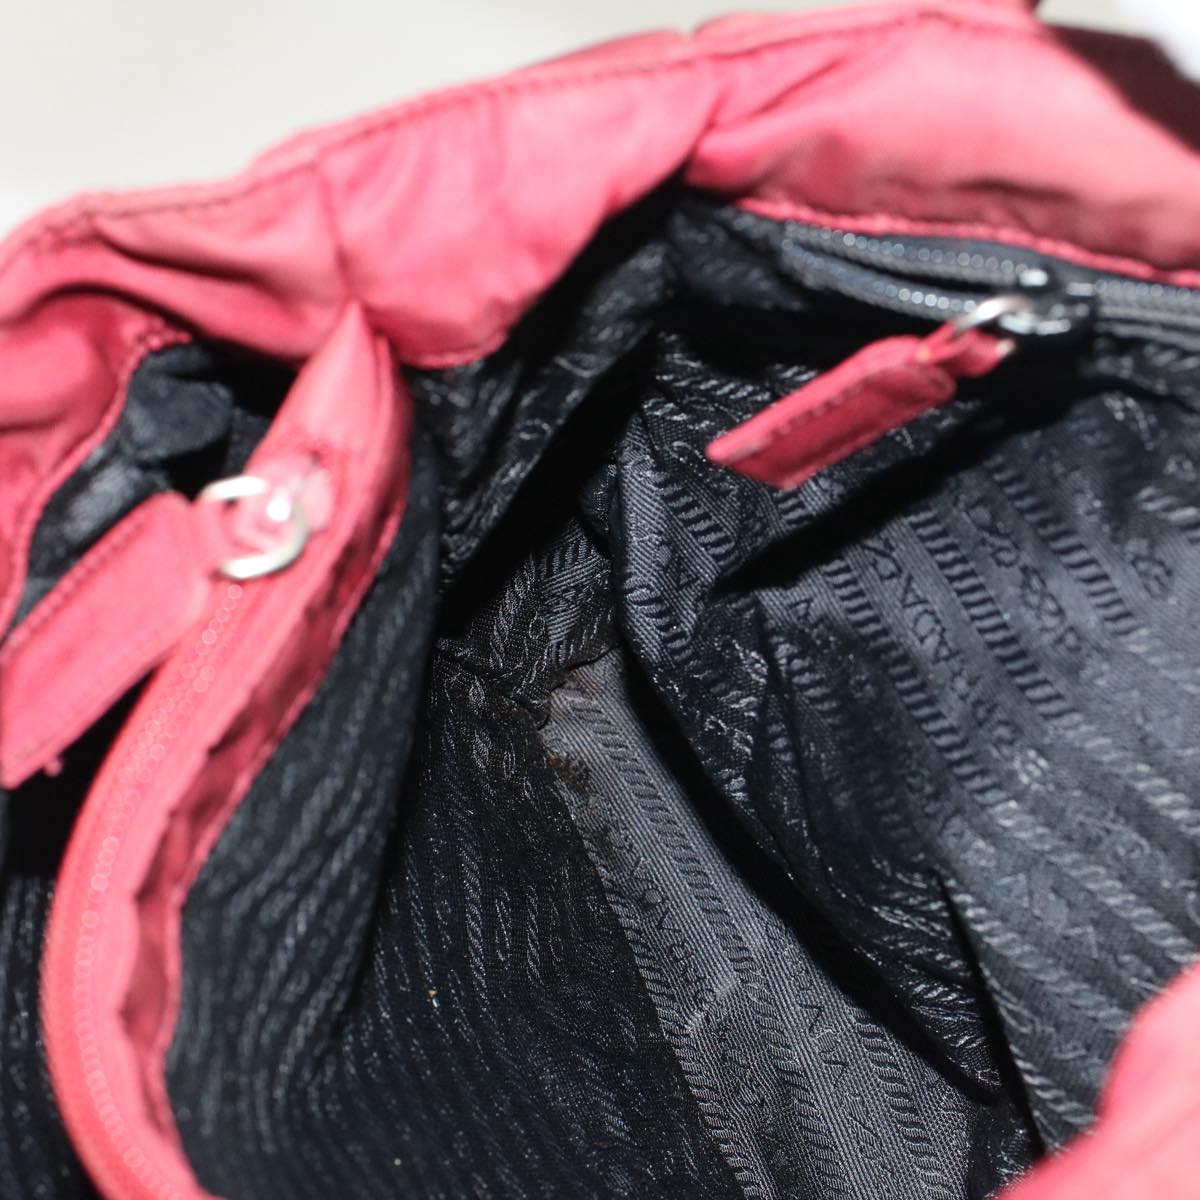 PRADA Hand Bag Nylon Red Auth cl678